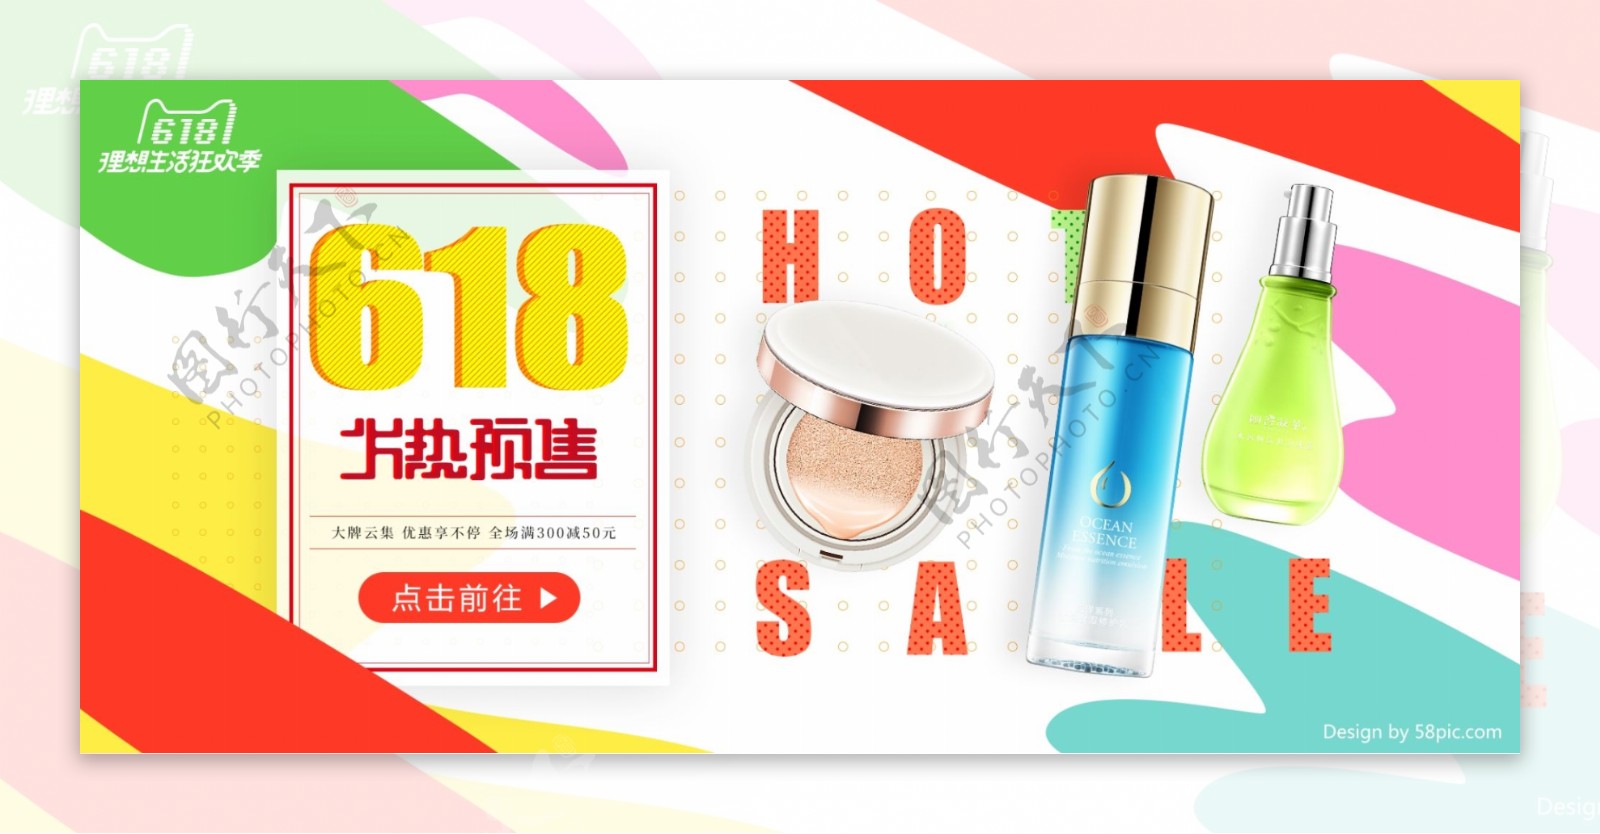 618预售彩色迷彩化妆品海报